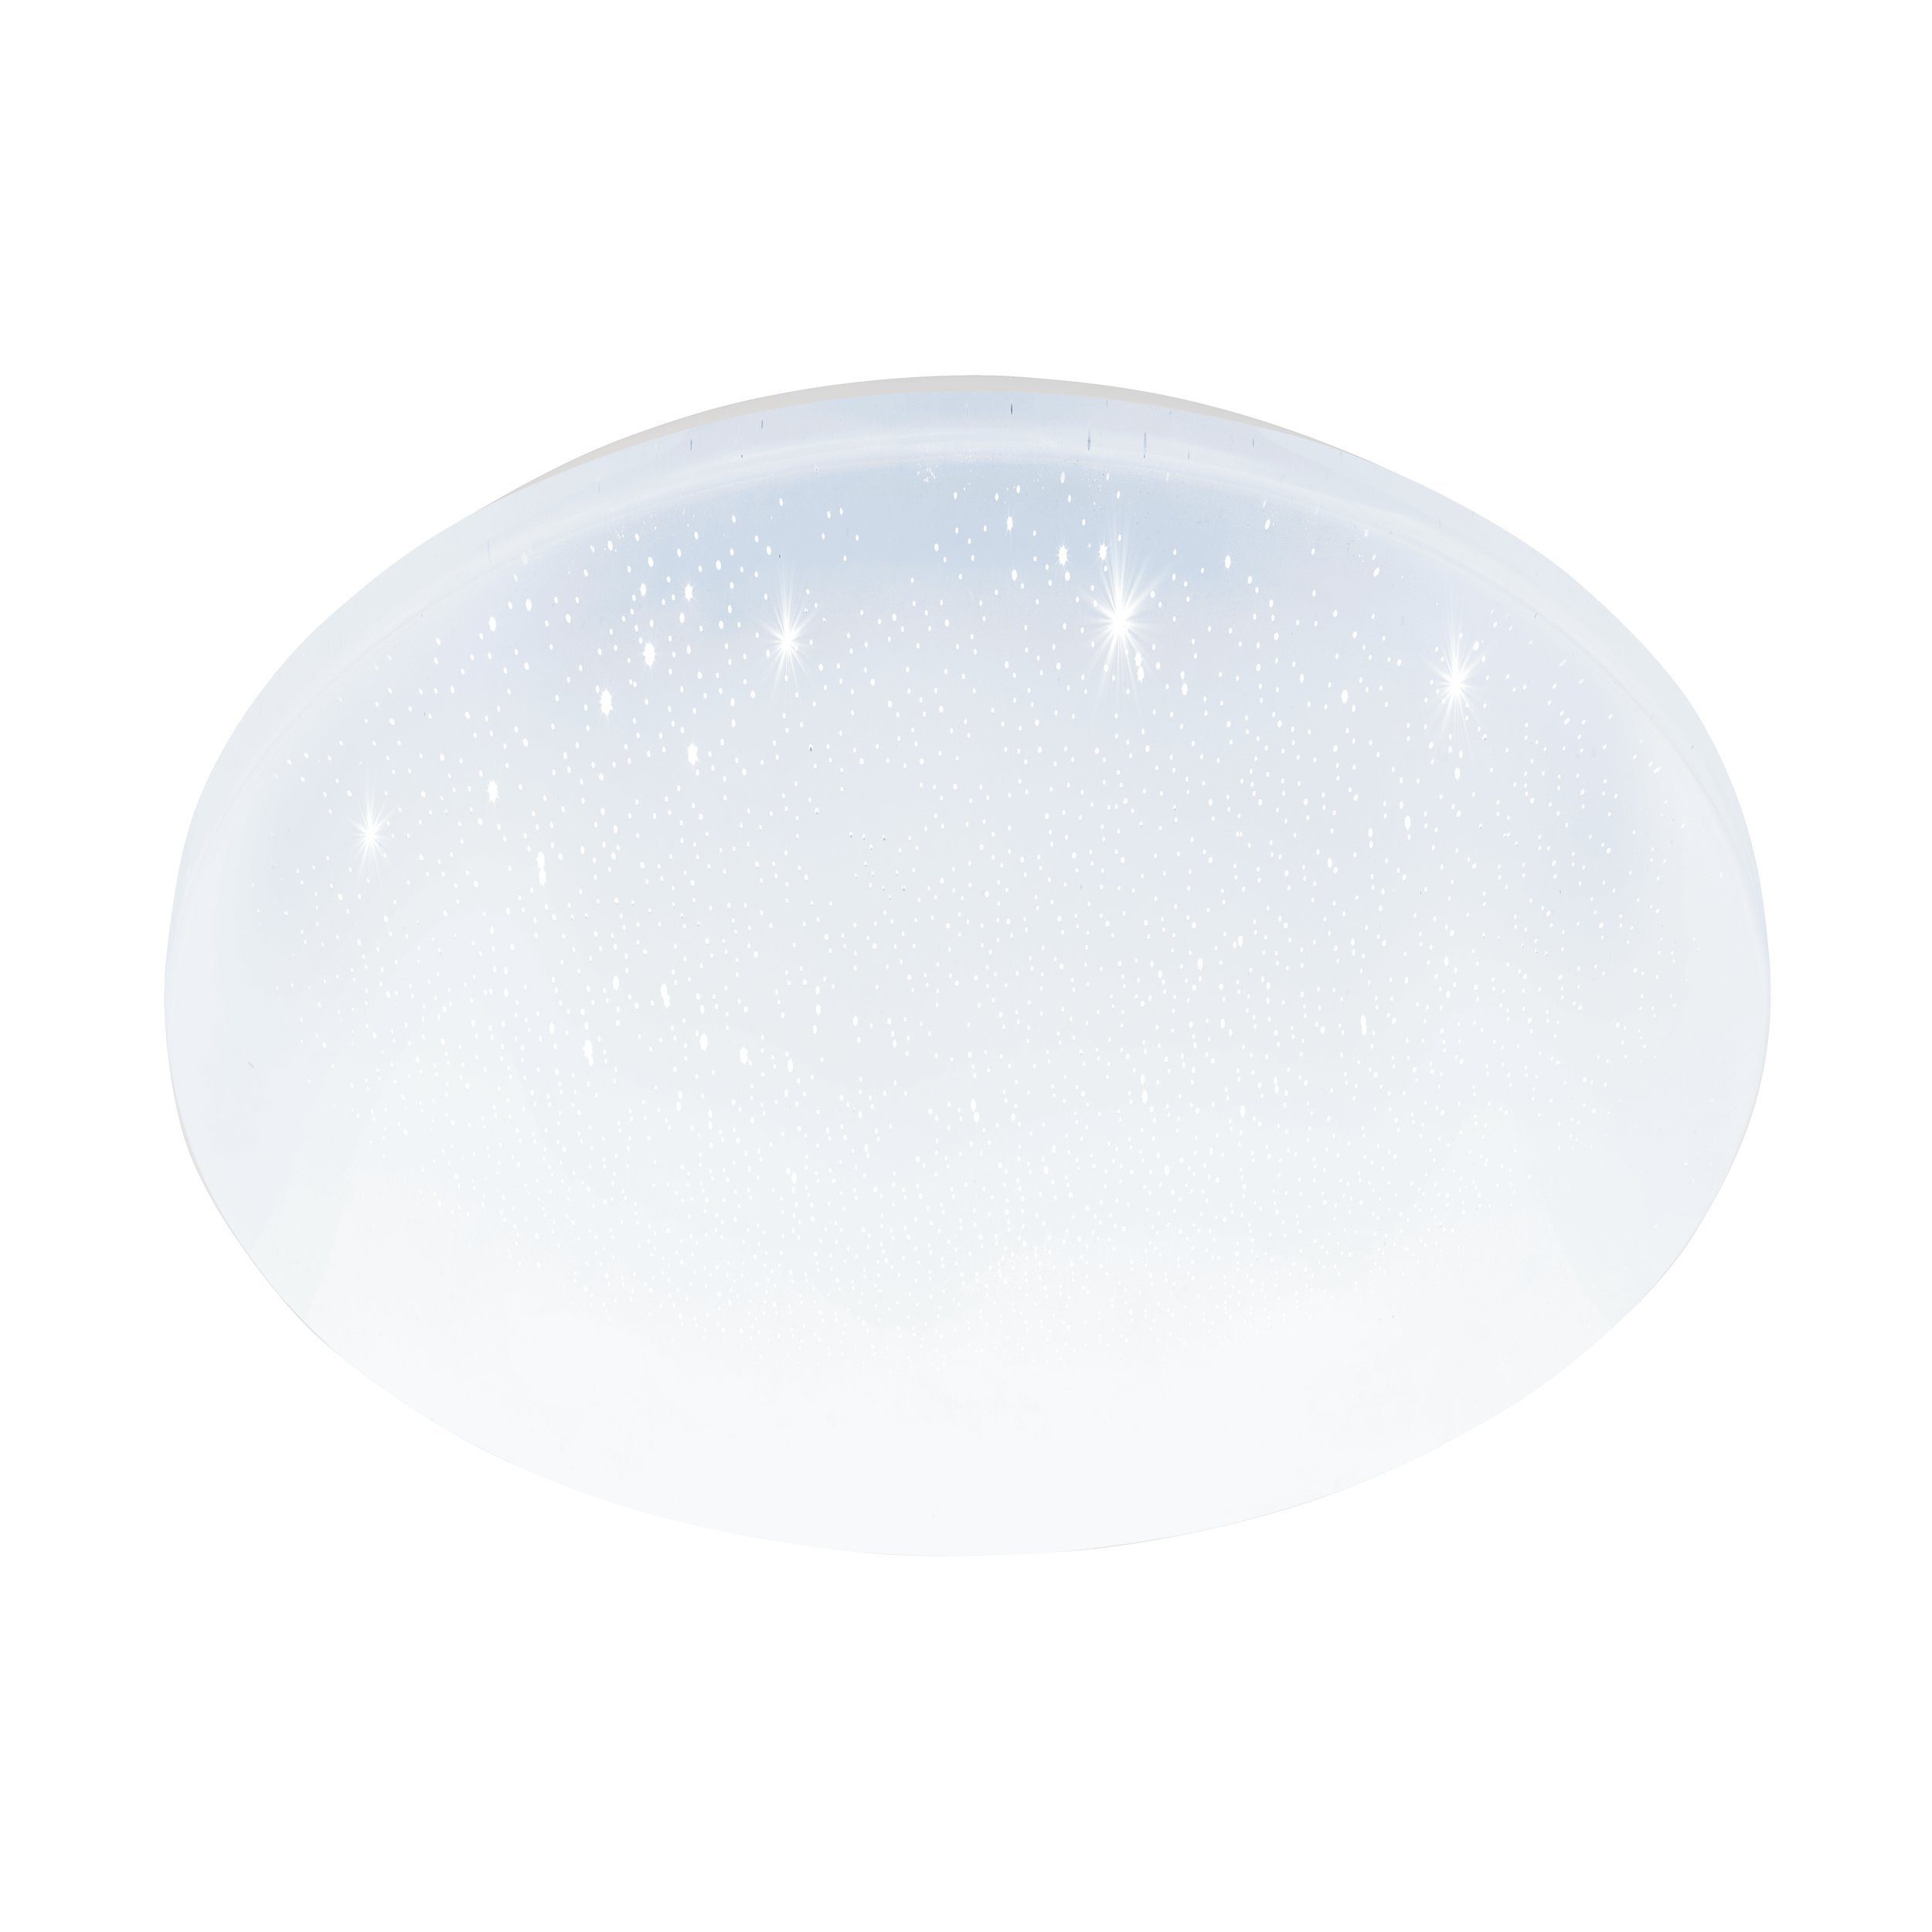 EGLO LED Deckenleuchte Pogliola-s, Leuchtmittel inklusive, Ø 31 cm, Kristall Deckenleuchte, Badleuchte, Badezimmer Lampe, IP44